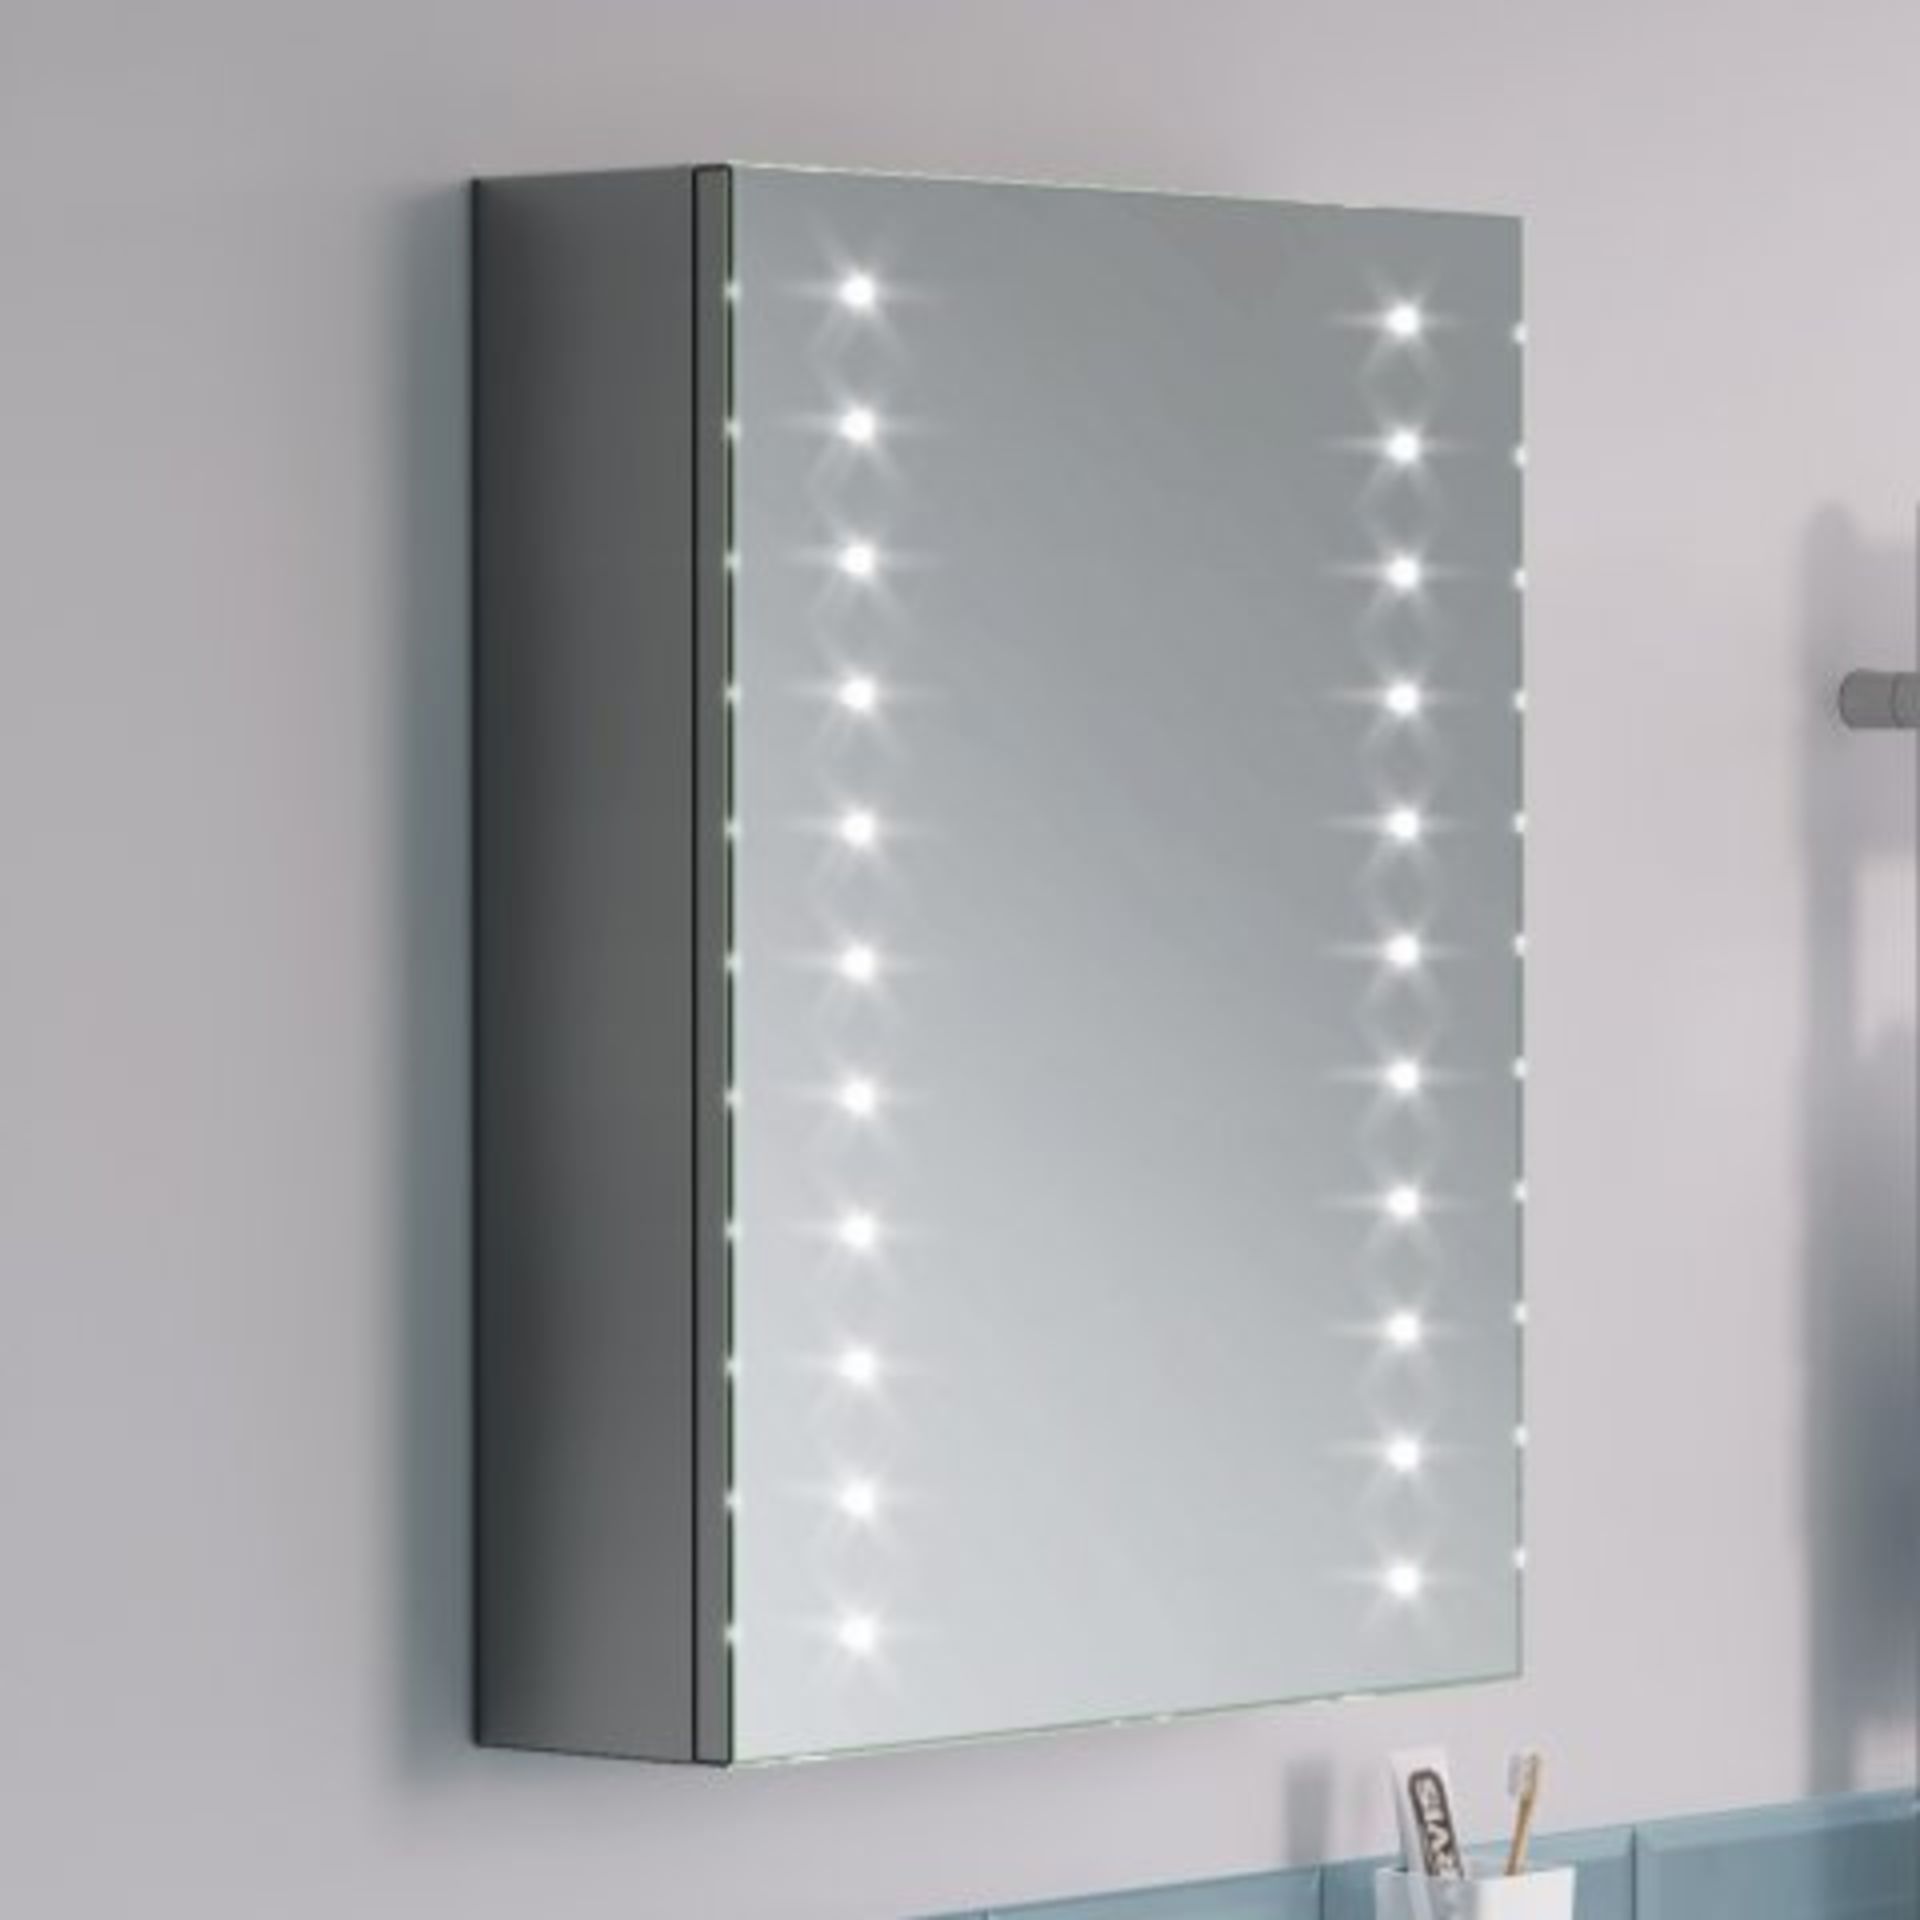 (H22) 450x600mm Galactic Illuminated LED Mirror Cabinet & Shaver Socket. RRP £399.99. LED Power - Image 2 of 4